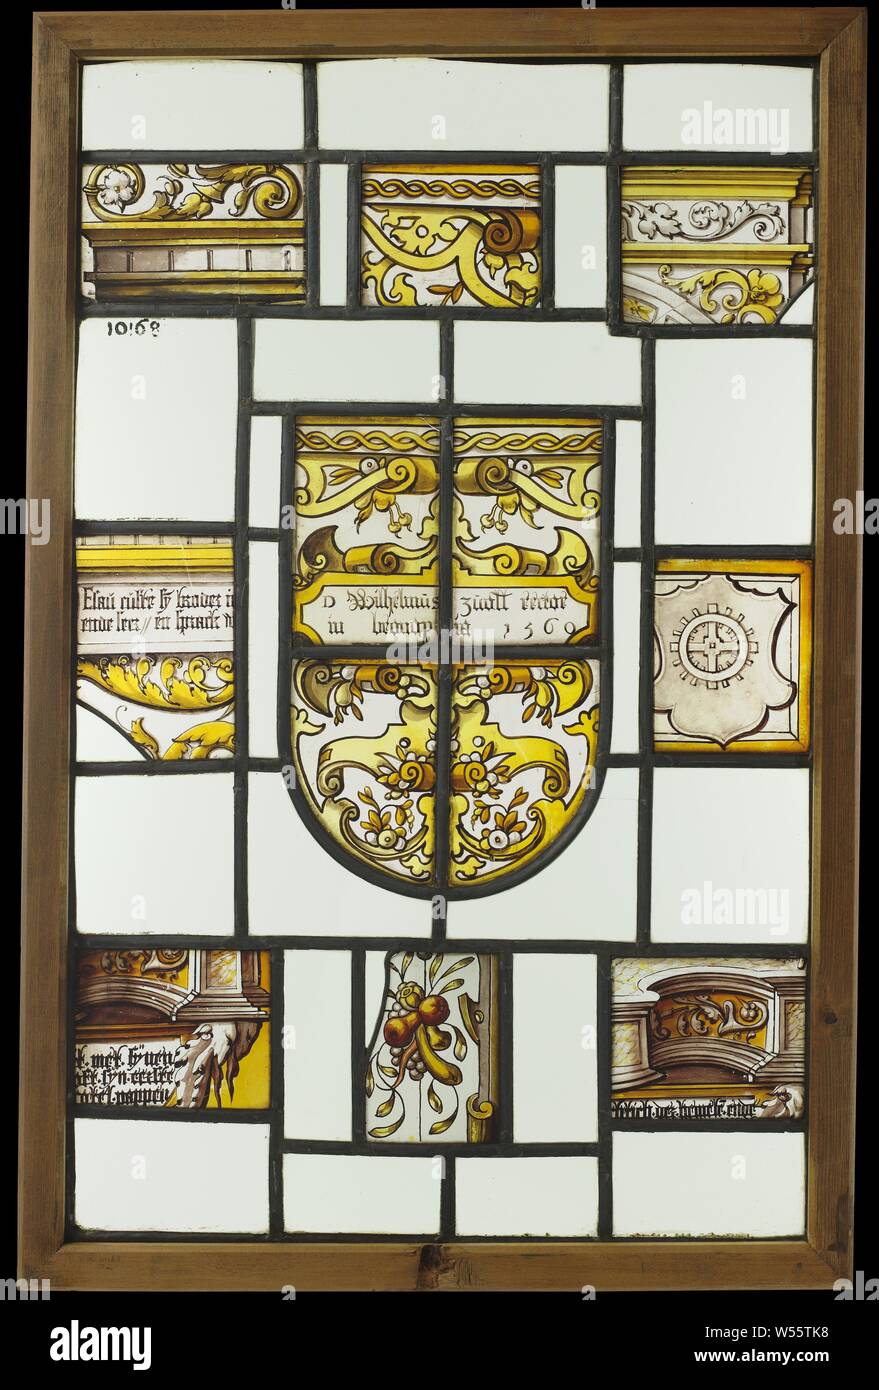 Finestra con frammenti architettonici e uno stemma con cartiglio con scritte, dodici diamanti con stemma e un cartiglio con scritte da Willem van Zwol, anonimo, 1560, vetro, silver stain, h 77,6 cm × W 51,4 cm Foto Stock